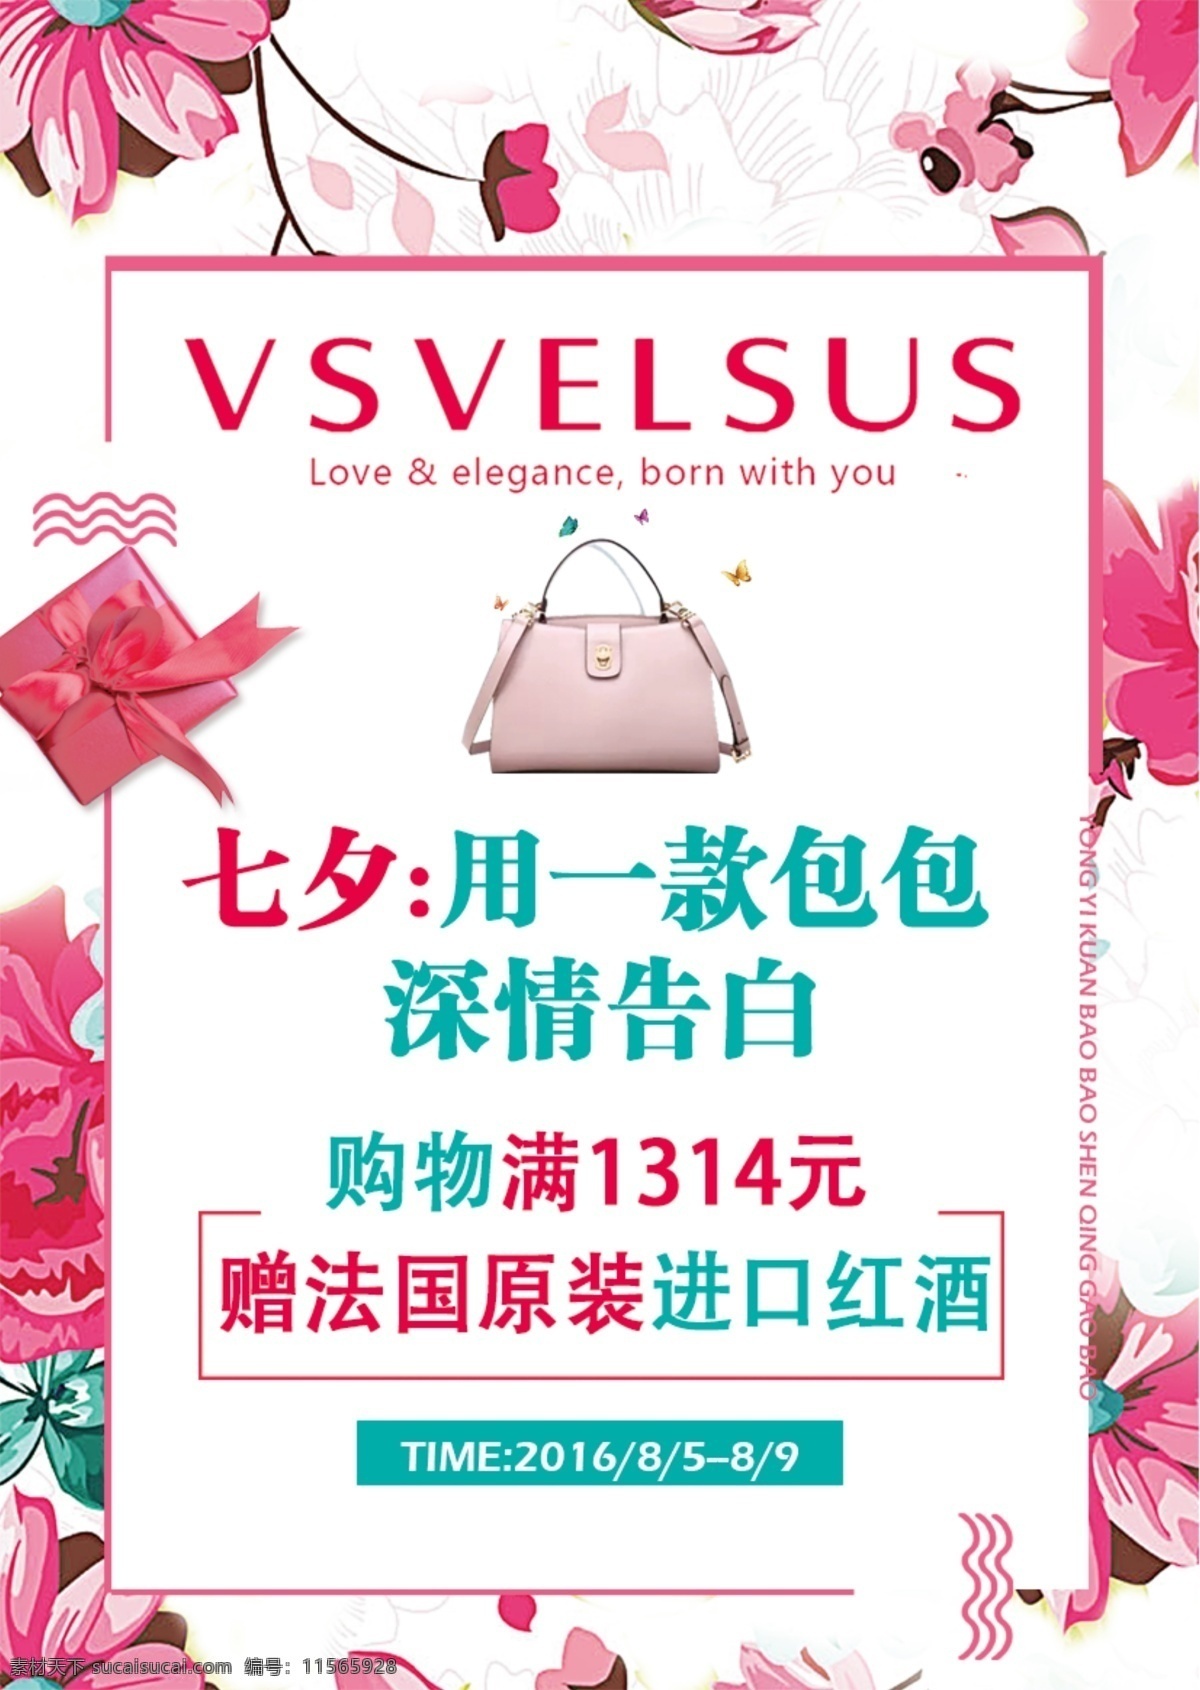 七夕 情人节 海报 花朵 浪漫 展板 箱包 宣传 粉红色 小 清新 箱包宣传 款 包包 深情 告白 白色